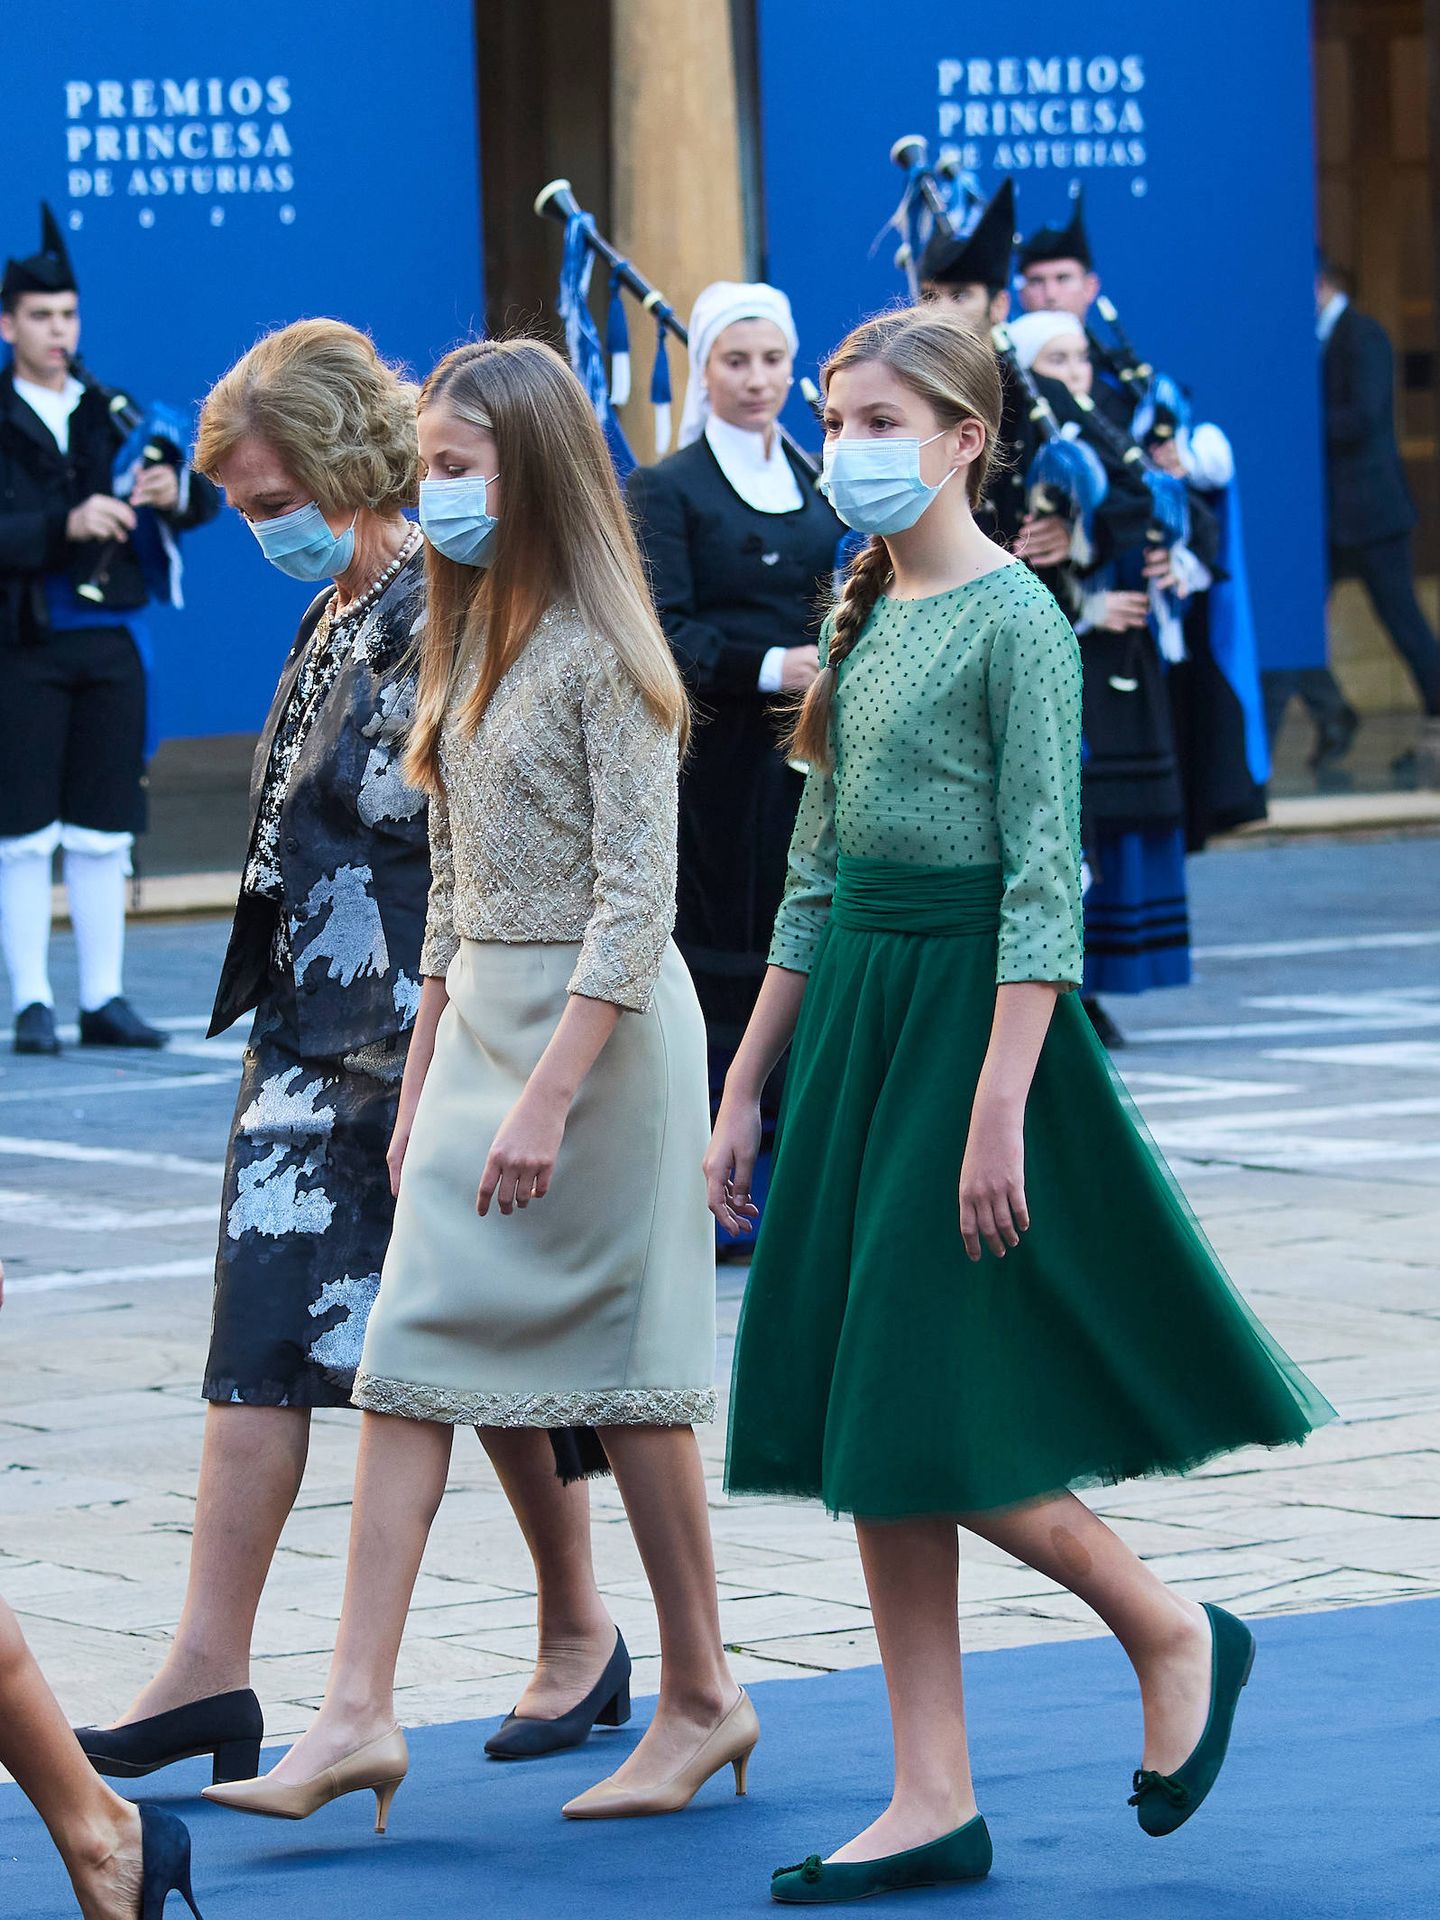 La reina emérita Sofía, la princesa Leonor y la infanta Sofía, en los Premios Princesa de Asturias 2020. (LP)